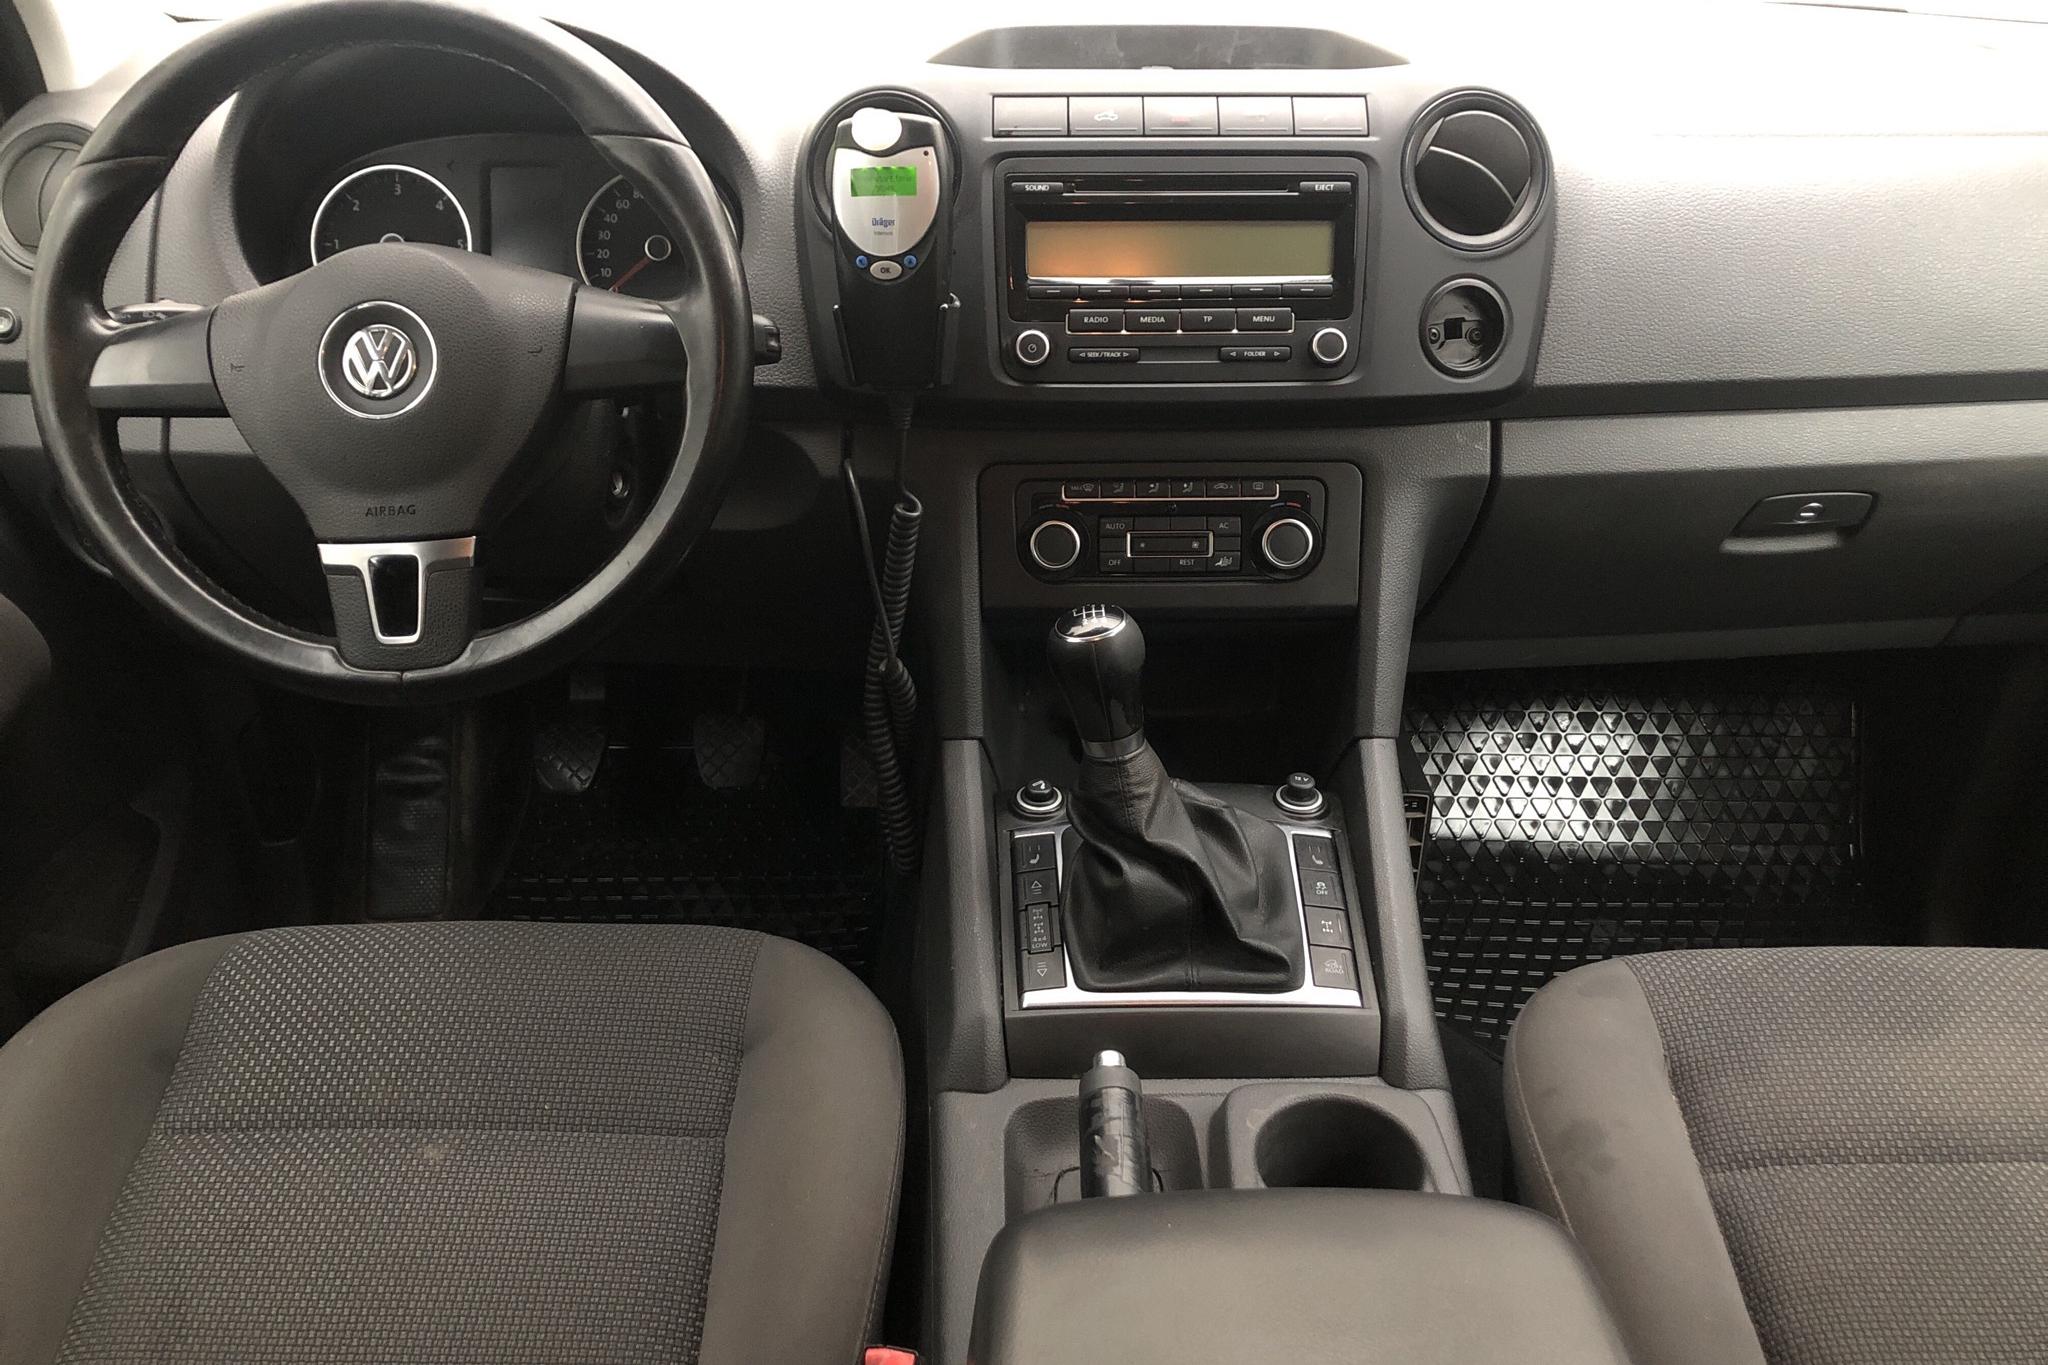 VW Amarok 2.0 TDI 4motion (163hk) - 79 710 km - Manual - white - 2012